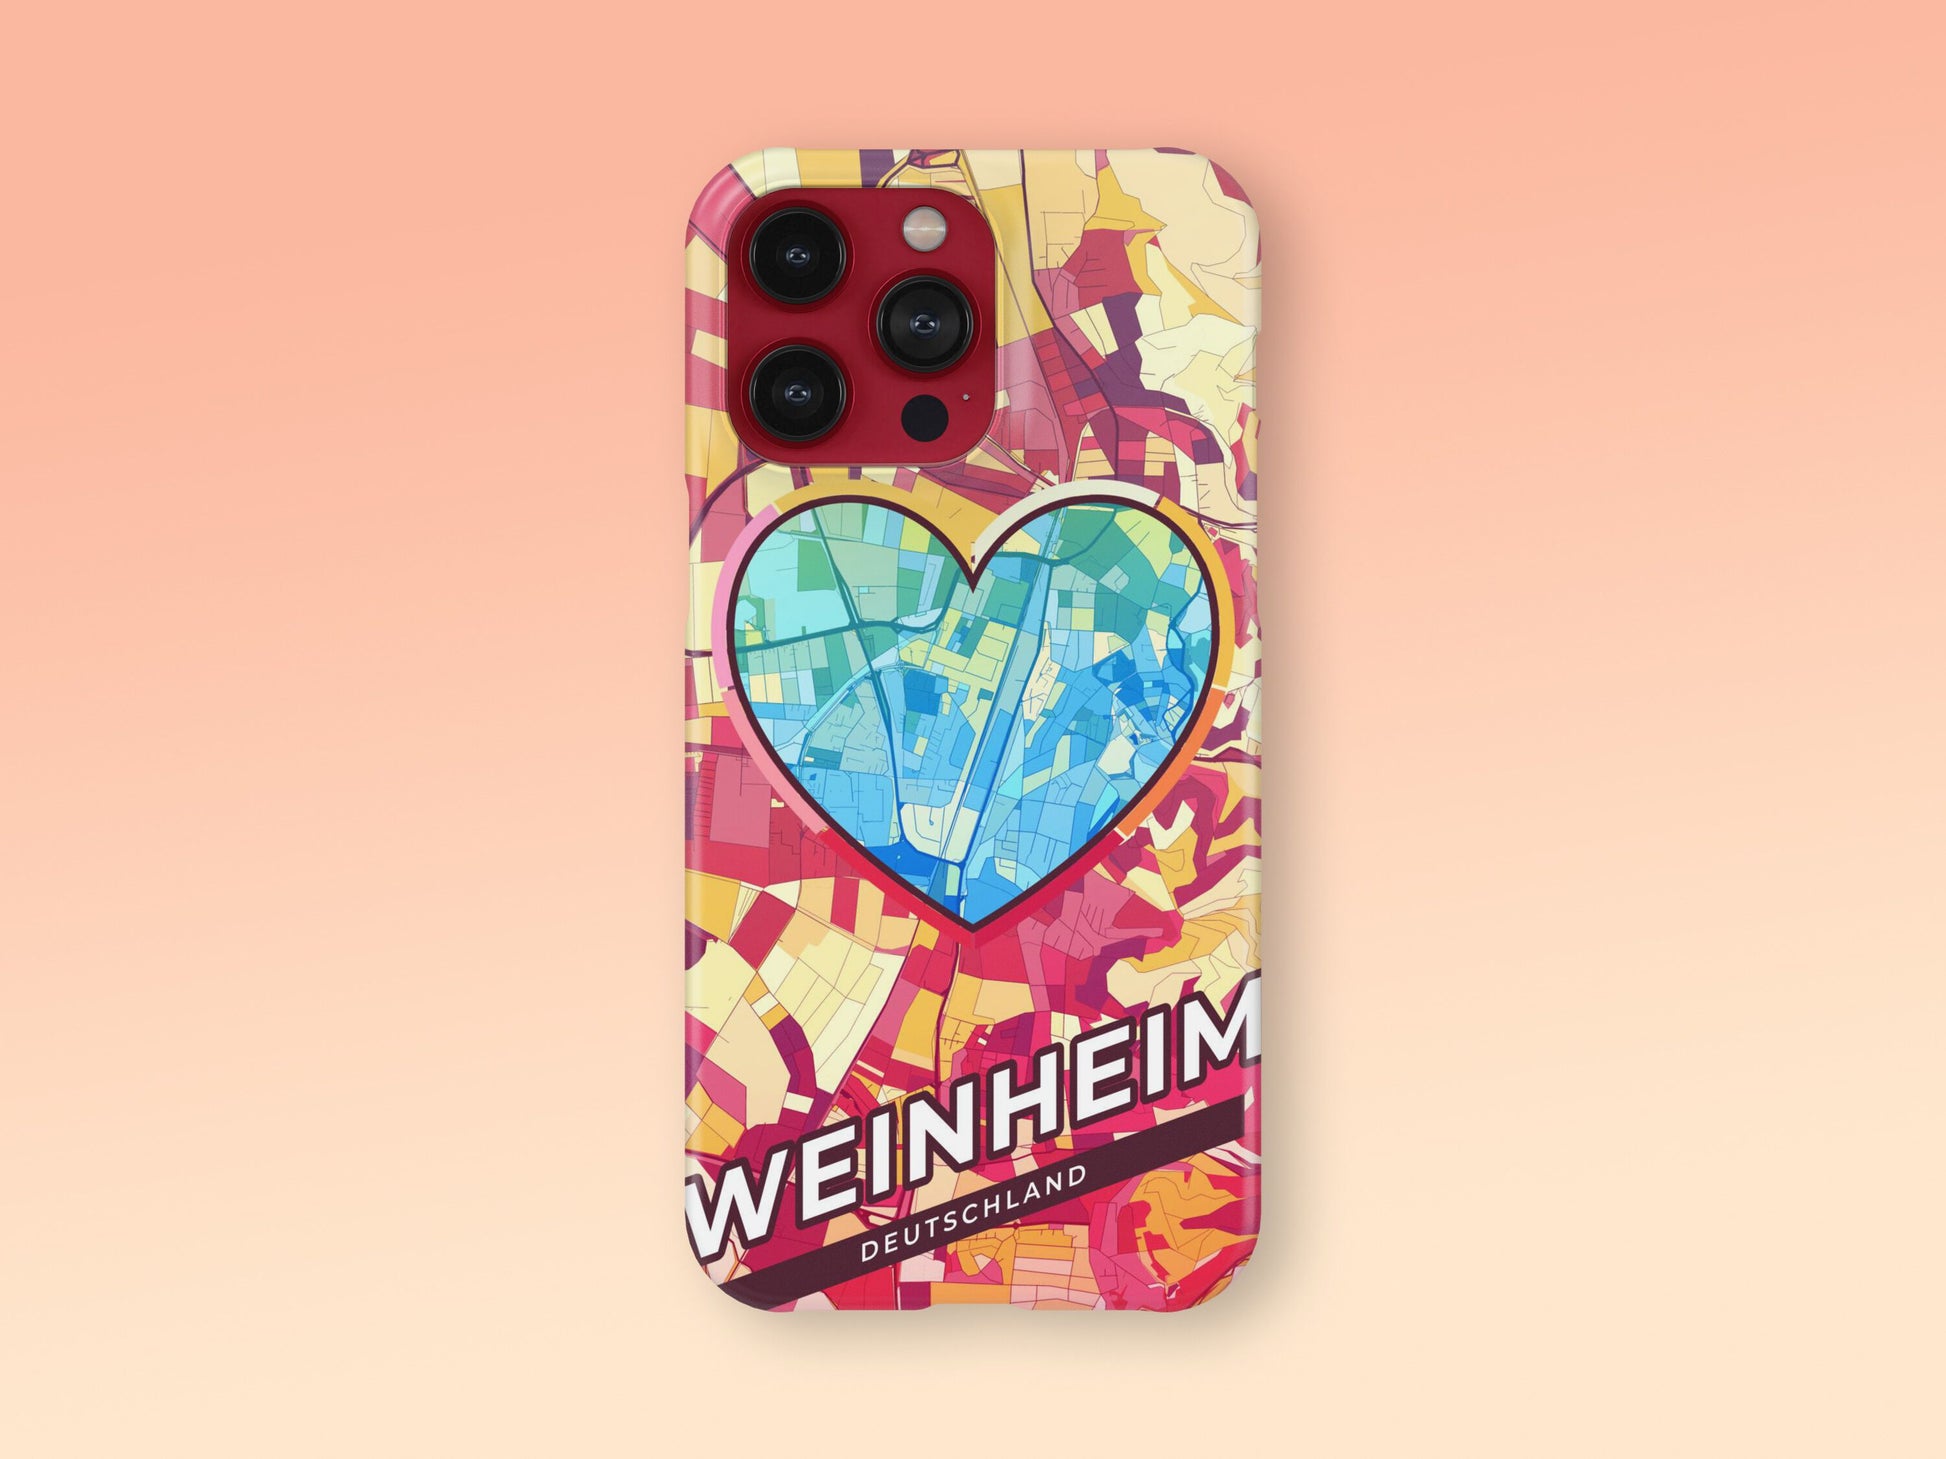 Weinheim Deutschland slim phone case with colorful icon 2